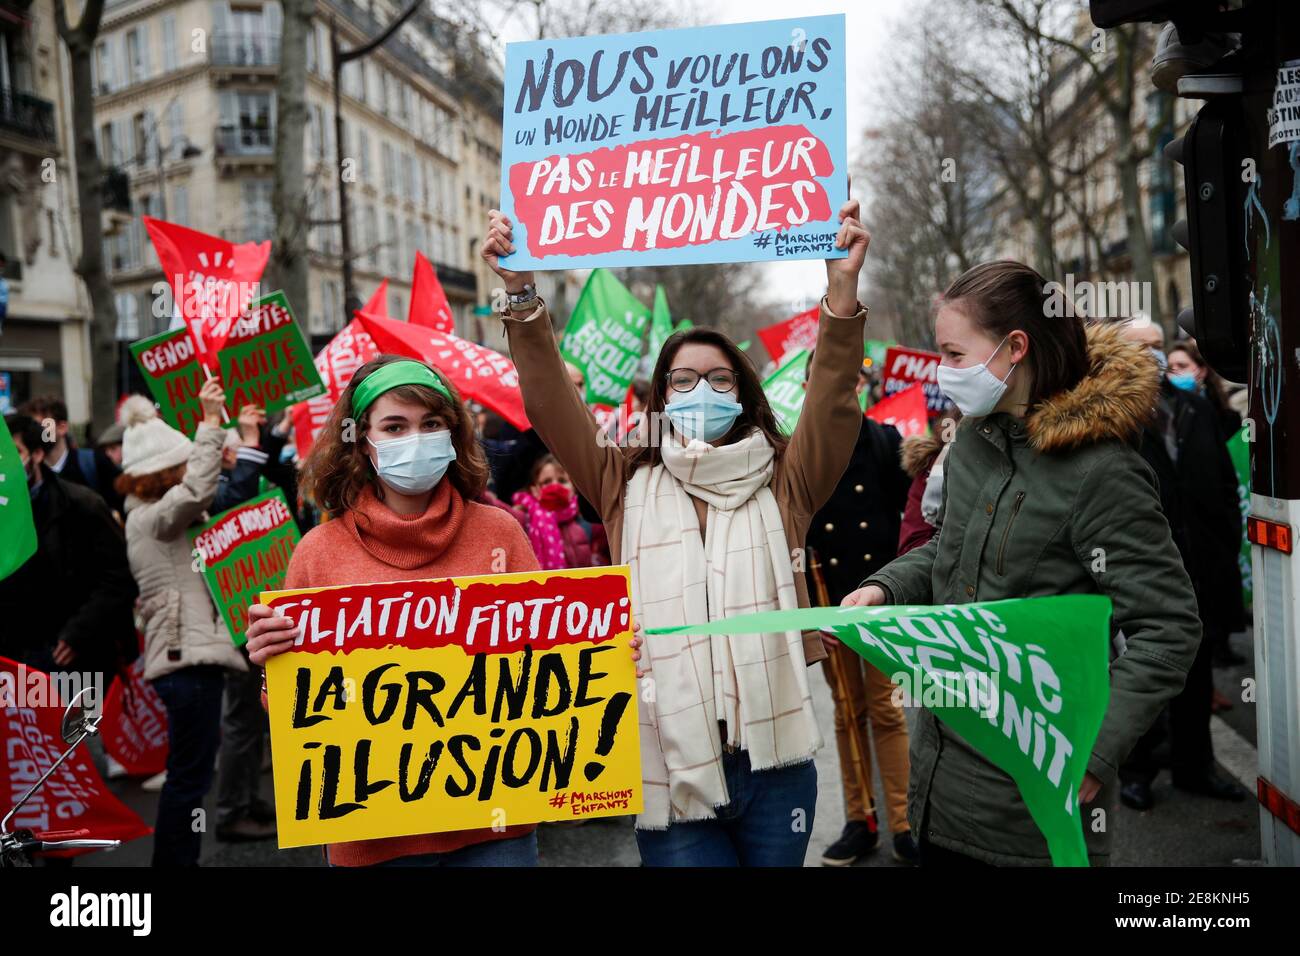 Die Demonstranten halten Plakate mit der Abschrift ''fiktive Filiation: Die große Illusion!'' Und "Wir wollen eine bessere Welt, nicht die beste der Welt" während eines Protestes gegen medizinisch unterstützte Fortpflanzung PMA, Leihmutterschaft GPA und die Bioethik Gesetz vor dem Gesundheitsministerium in Paris, Frankreich, 31. Januar 2021. REUTERS/Benoit Tessier Stockfoto